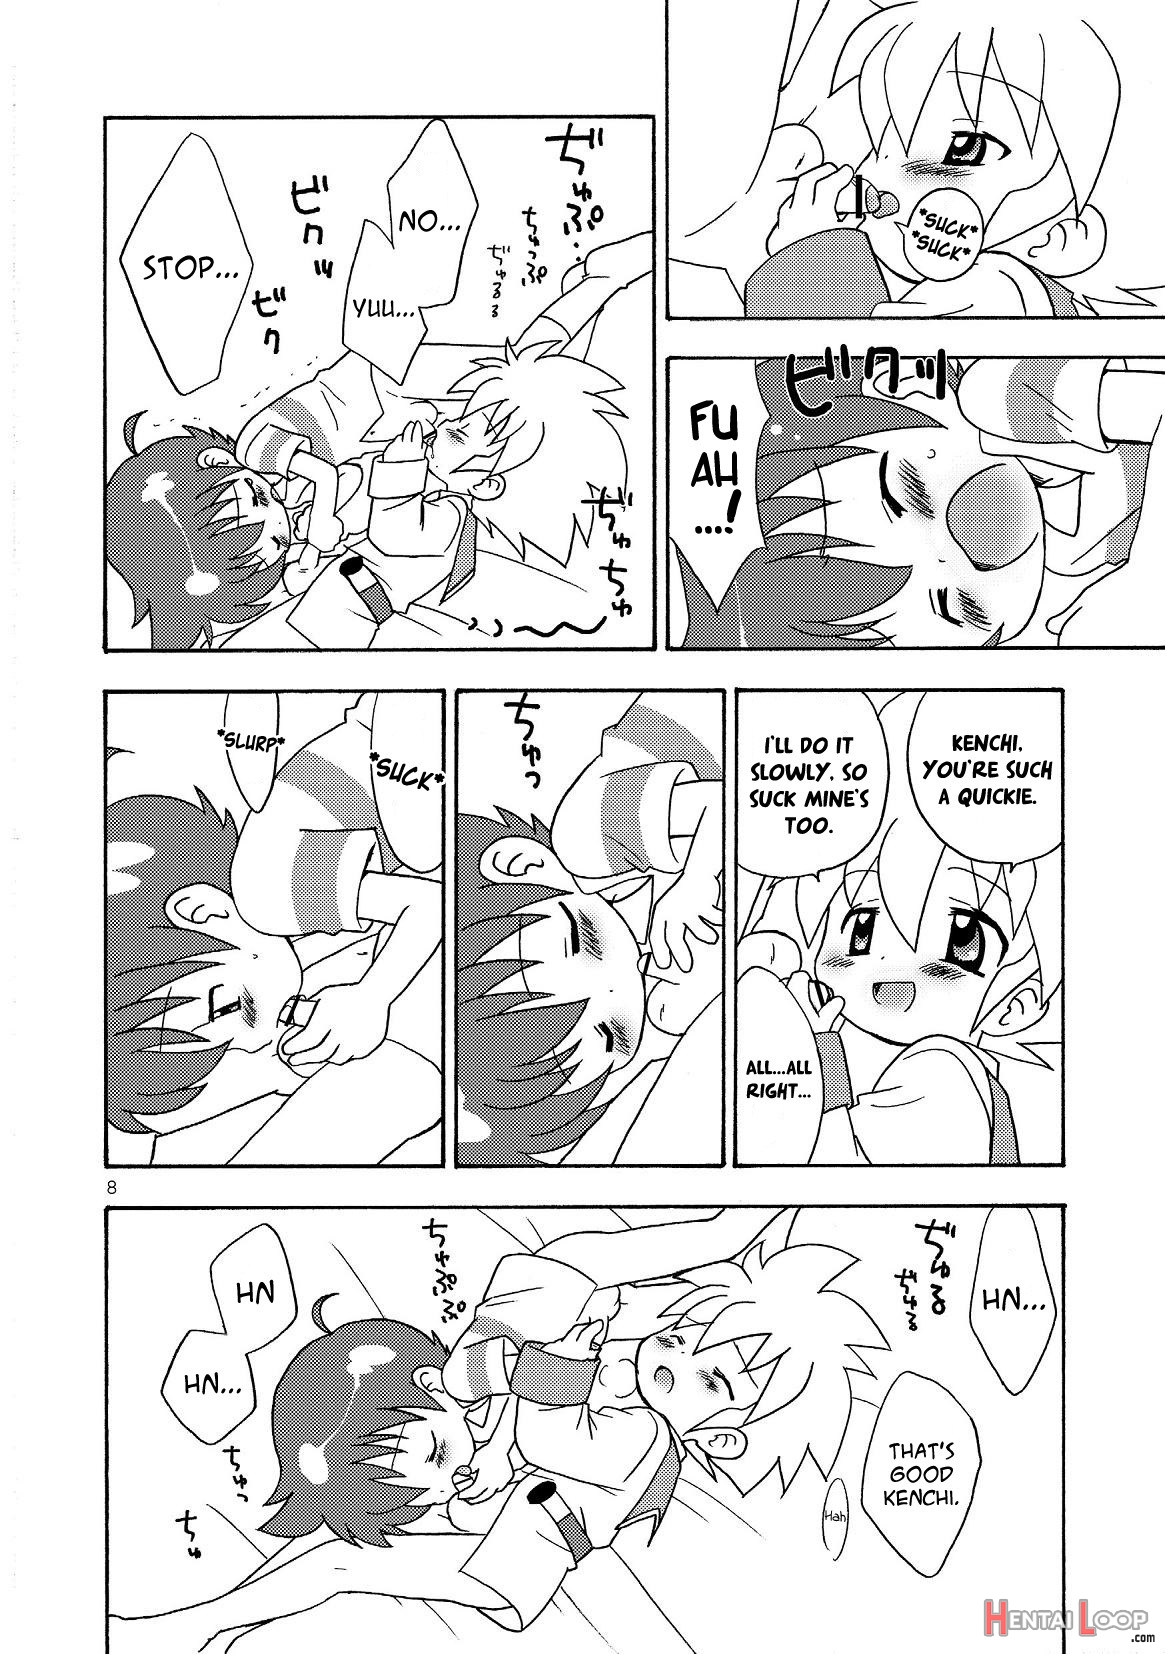 Fuwafuwa page 8